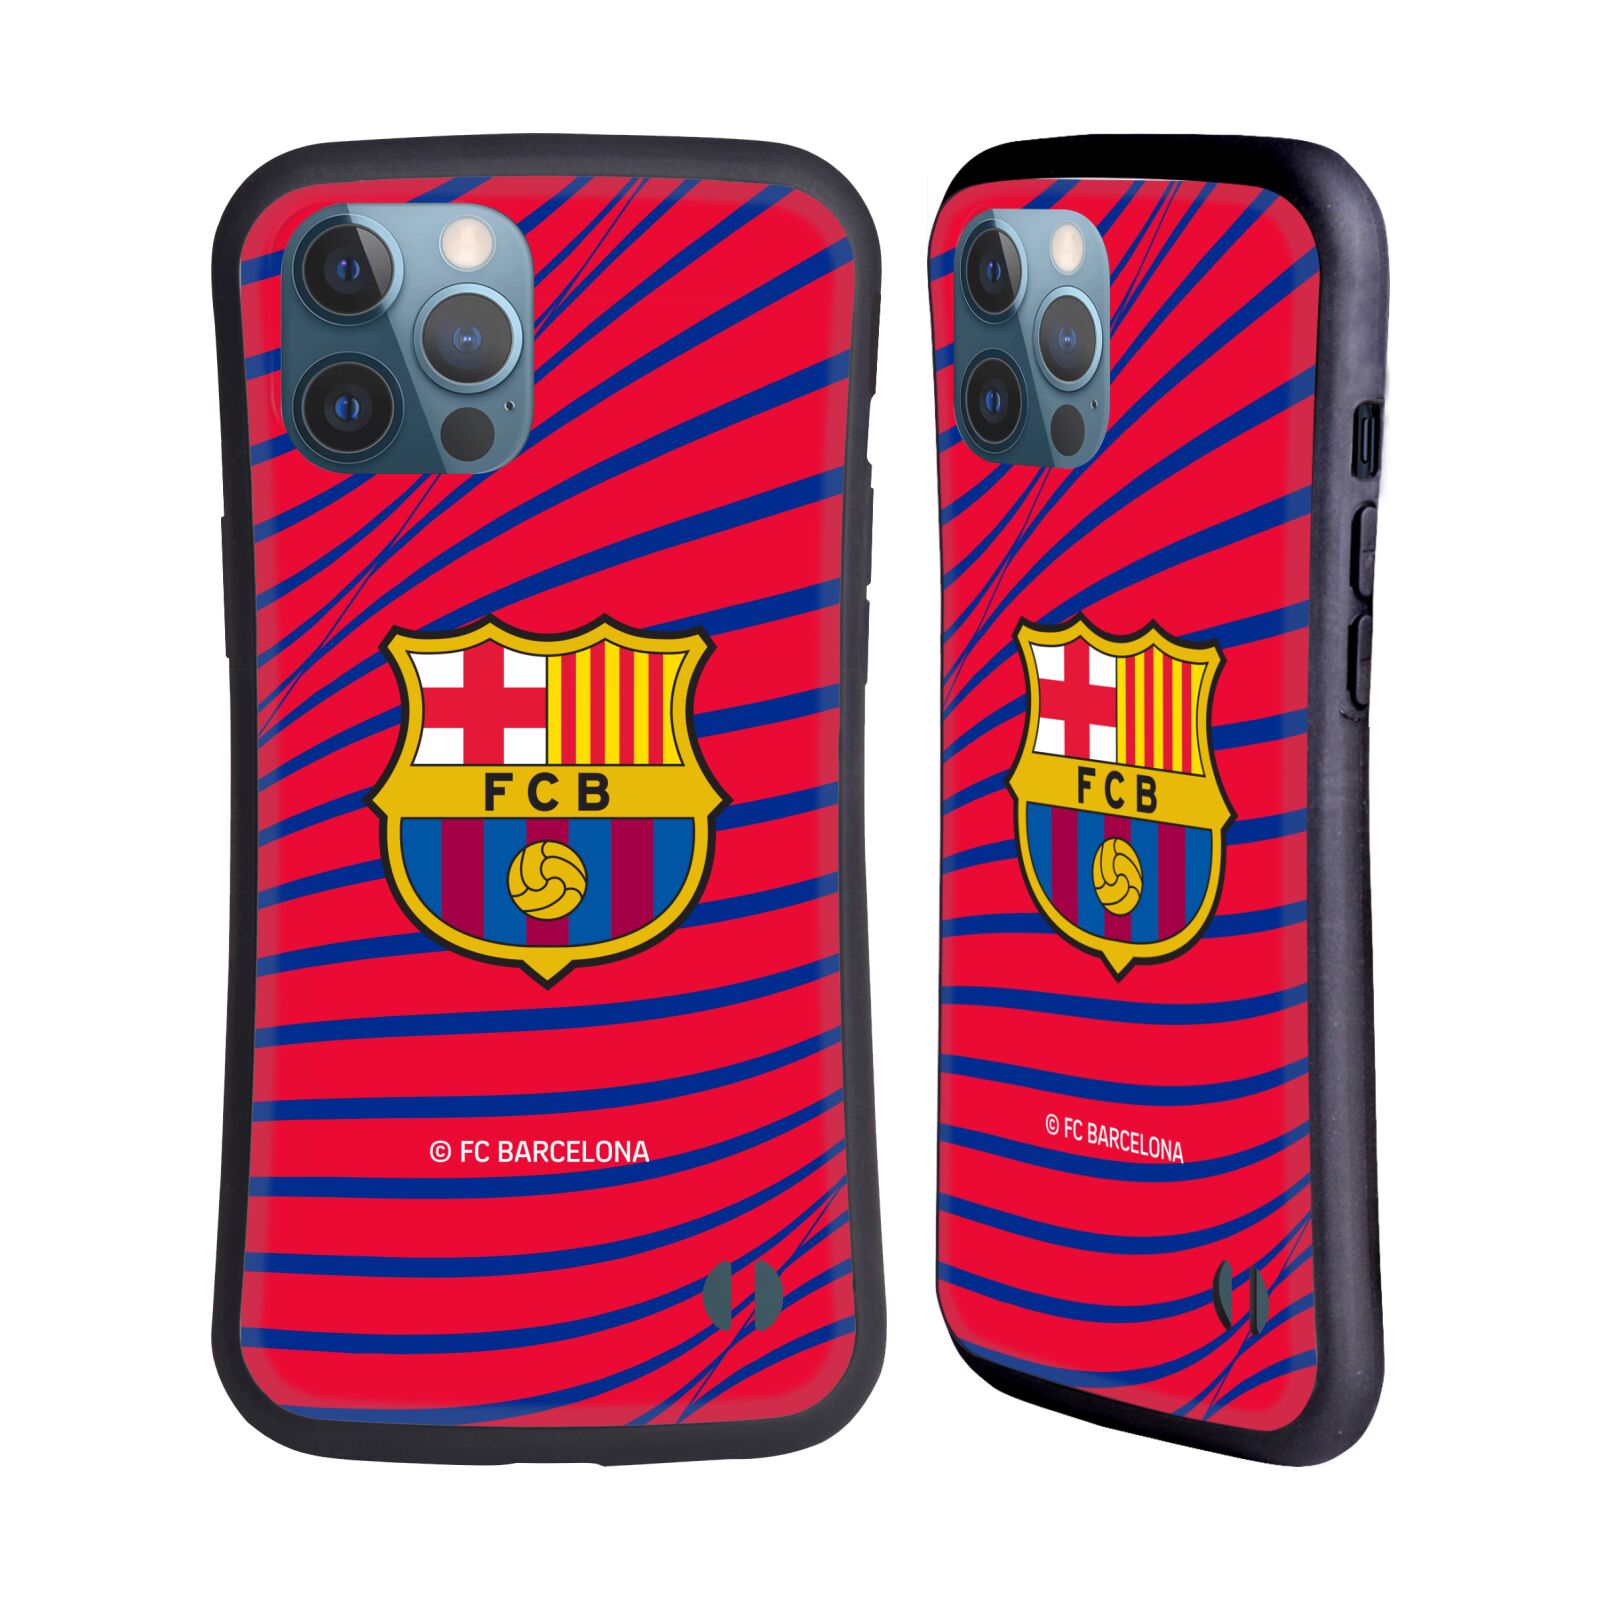 Odolný zadní obal pro mobil Apple iPhone 12 PRO MAX - HEAD CASE - FC Barcelona - Červená textura velký znak